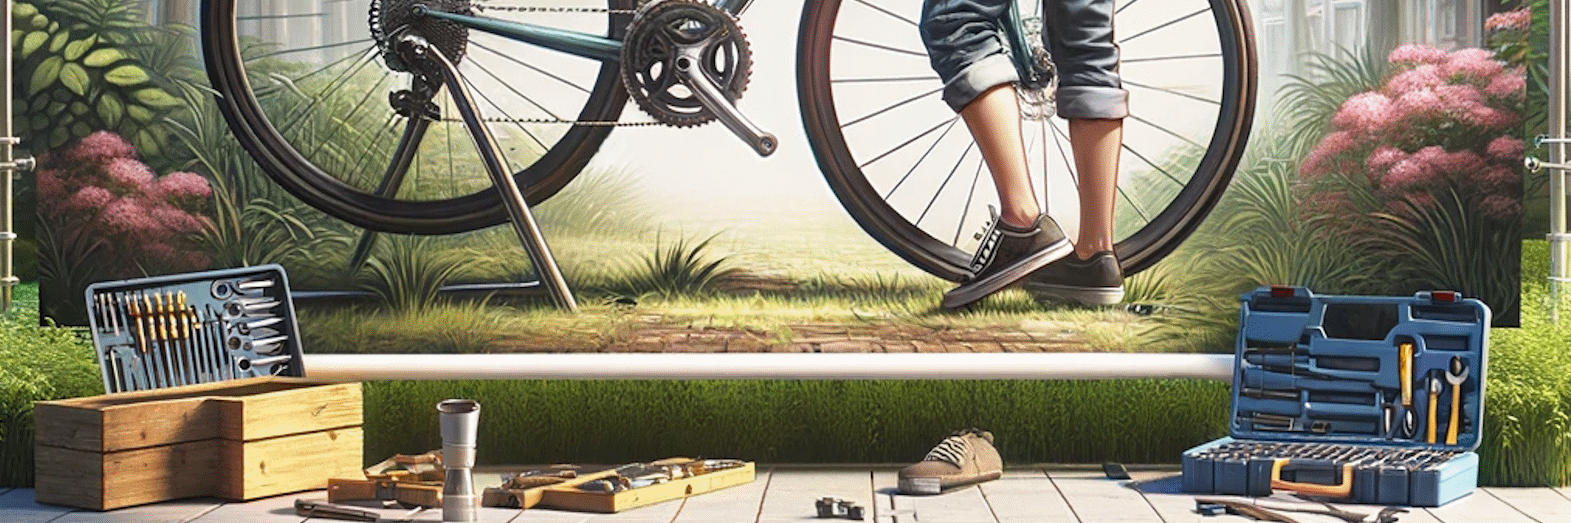 Læs vores guide til vedligeholdelse af cykler | Alex Cykler